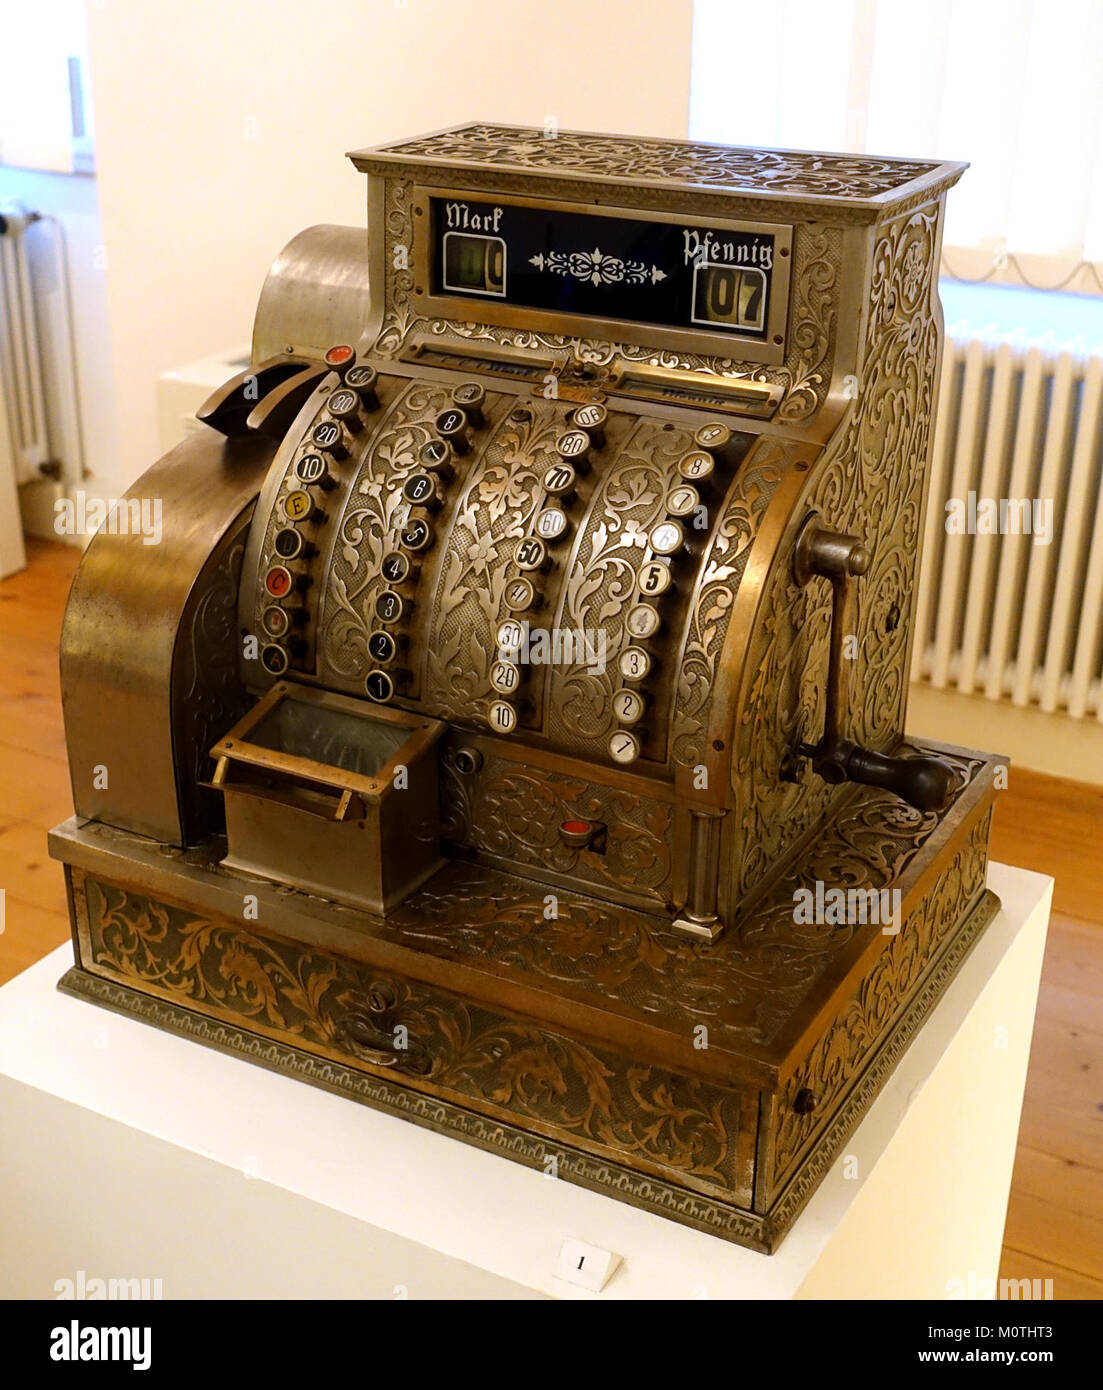 Cash register, Grimme, Natalis, & Co. (later Brunsviga Maschinenwerke), Braunschweig, late 1800s - Braunschweigisches Landesmuseum - DSC04775 Stock Photo